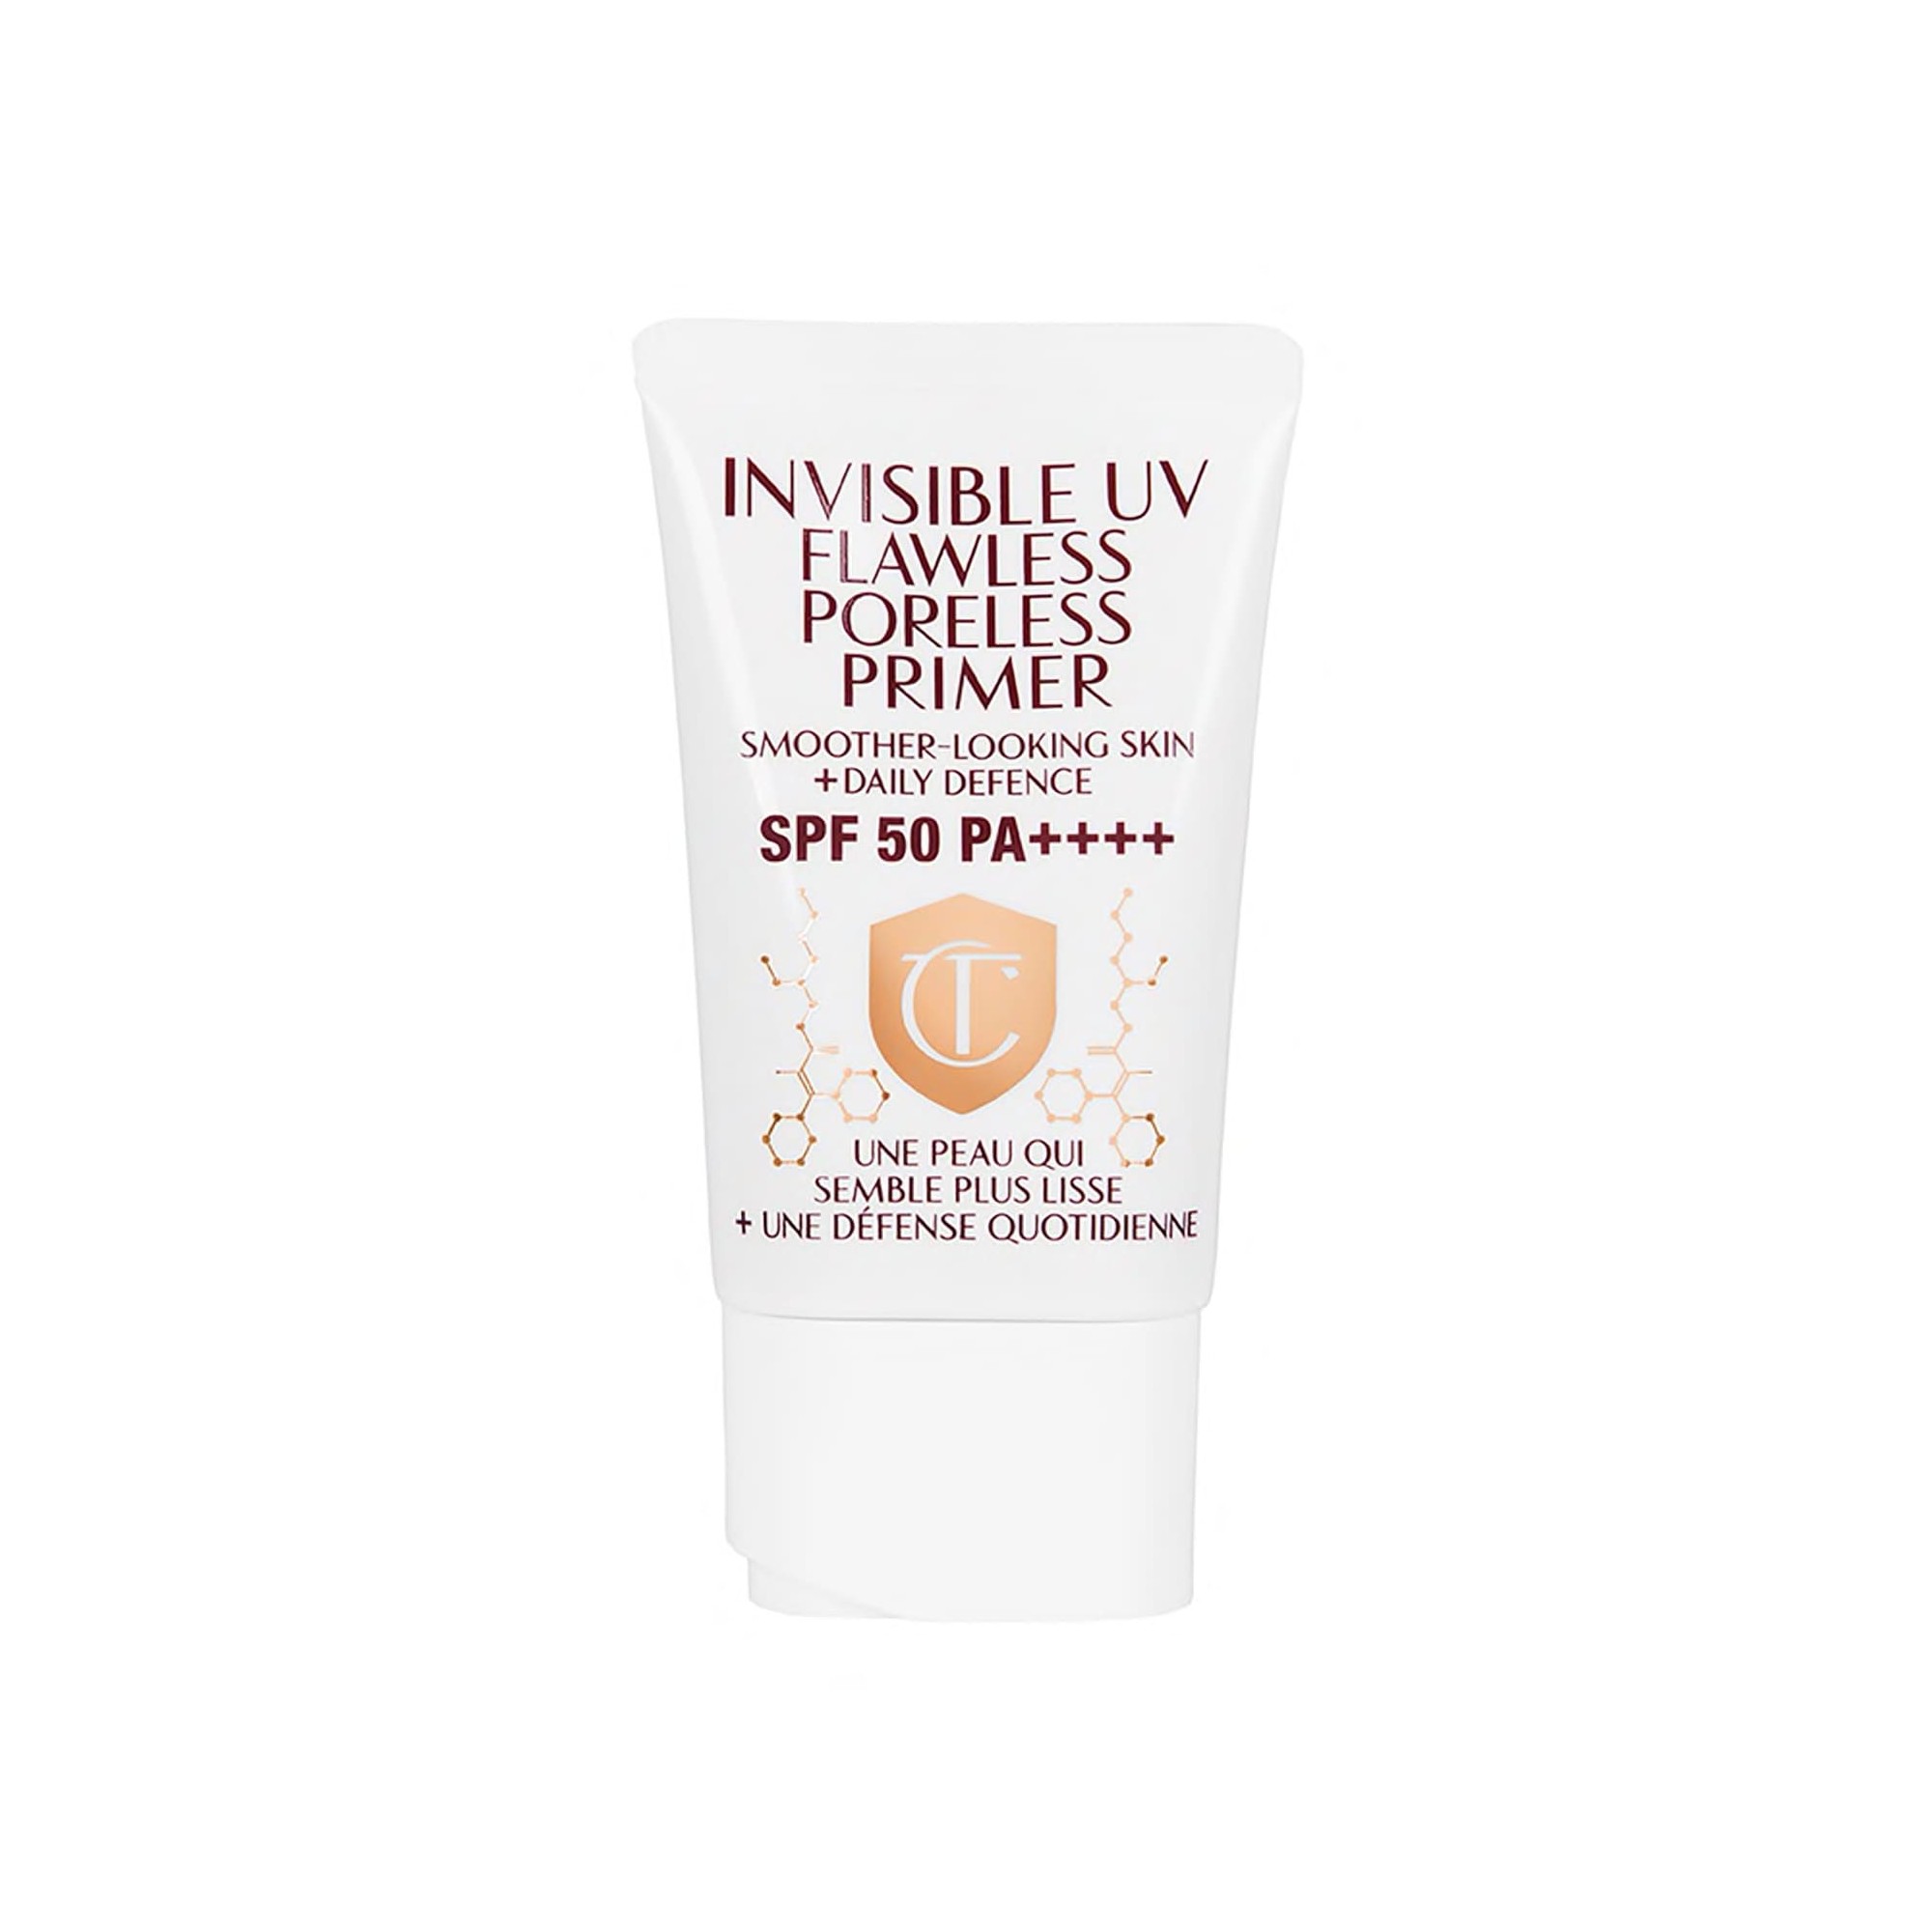 Charlotte Tilbury Invisible UV Flawless Poreless Primer SPF 50